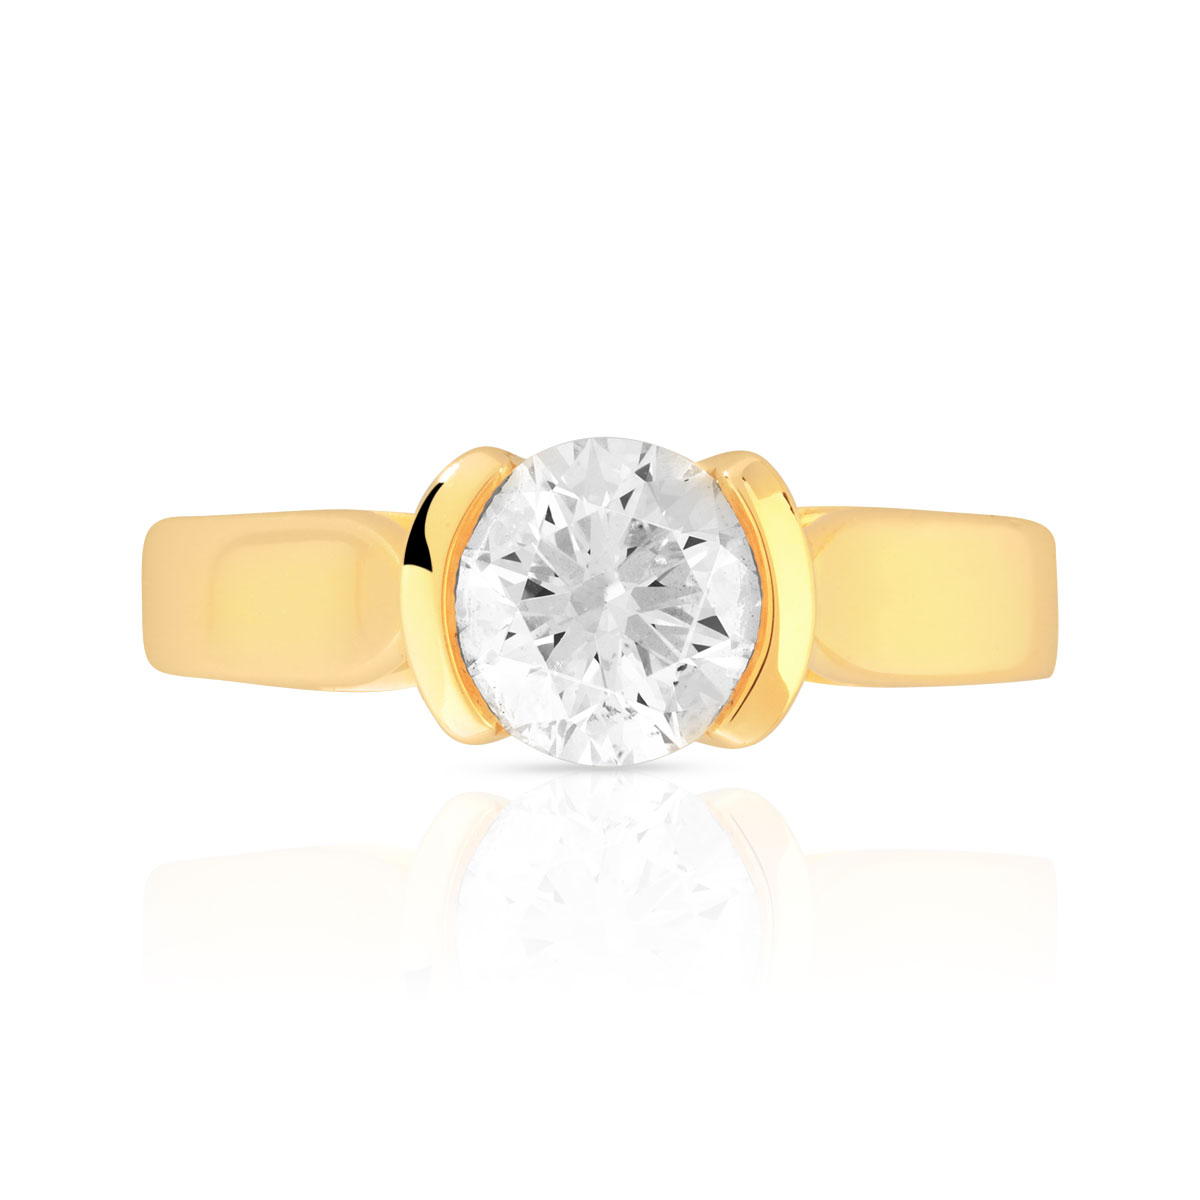 Bague solitaire or 750 jaune diamant synthétique 1 carat - vue 3